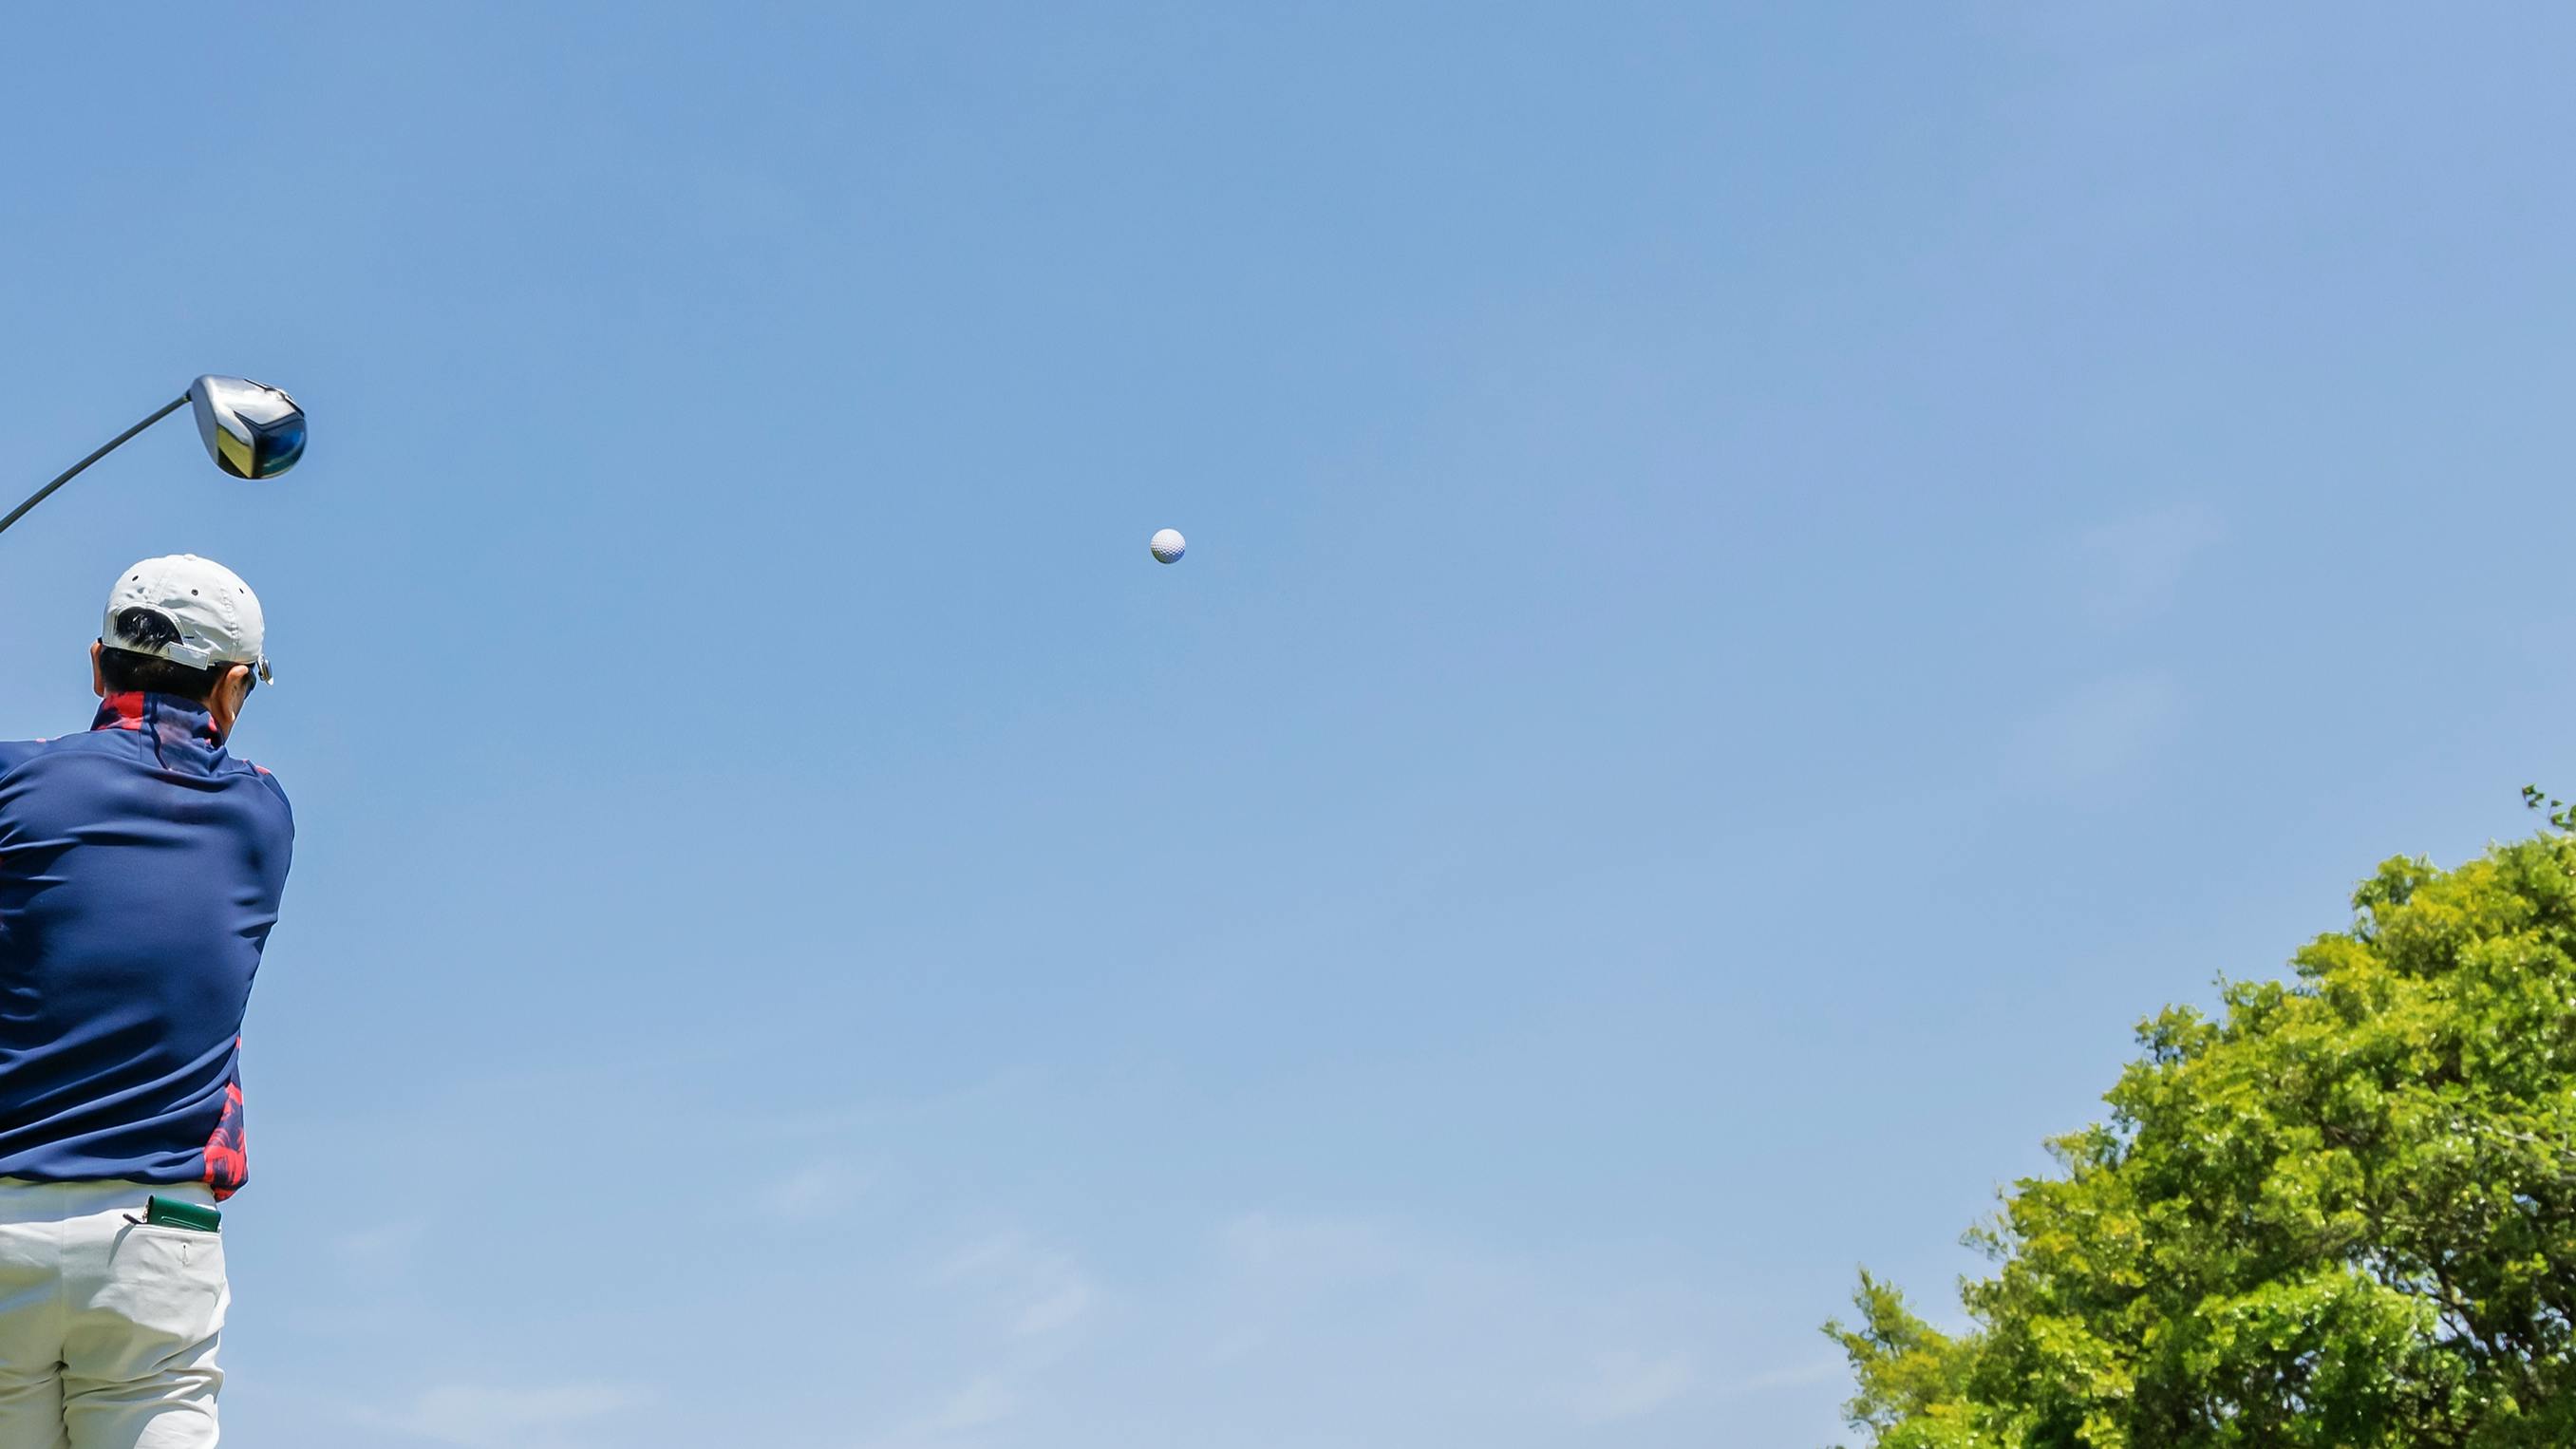 A golfer swinging his driver as a golf ball flies through the air.